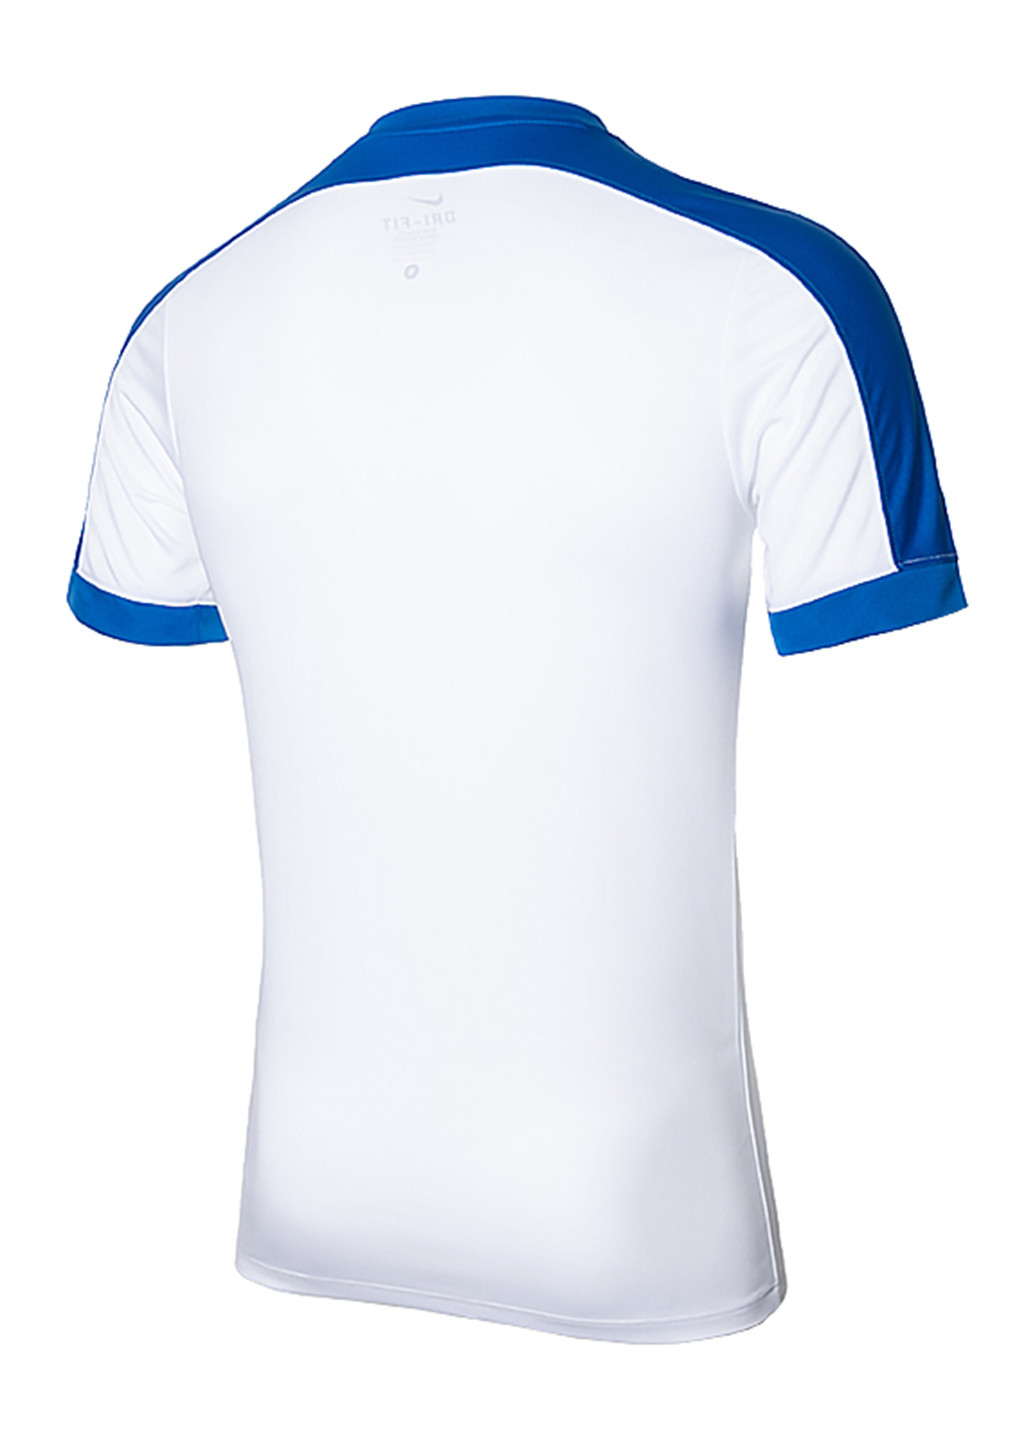 Світло-блакитна футболка Nike Striker IV